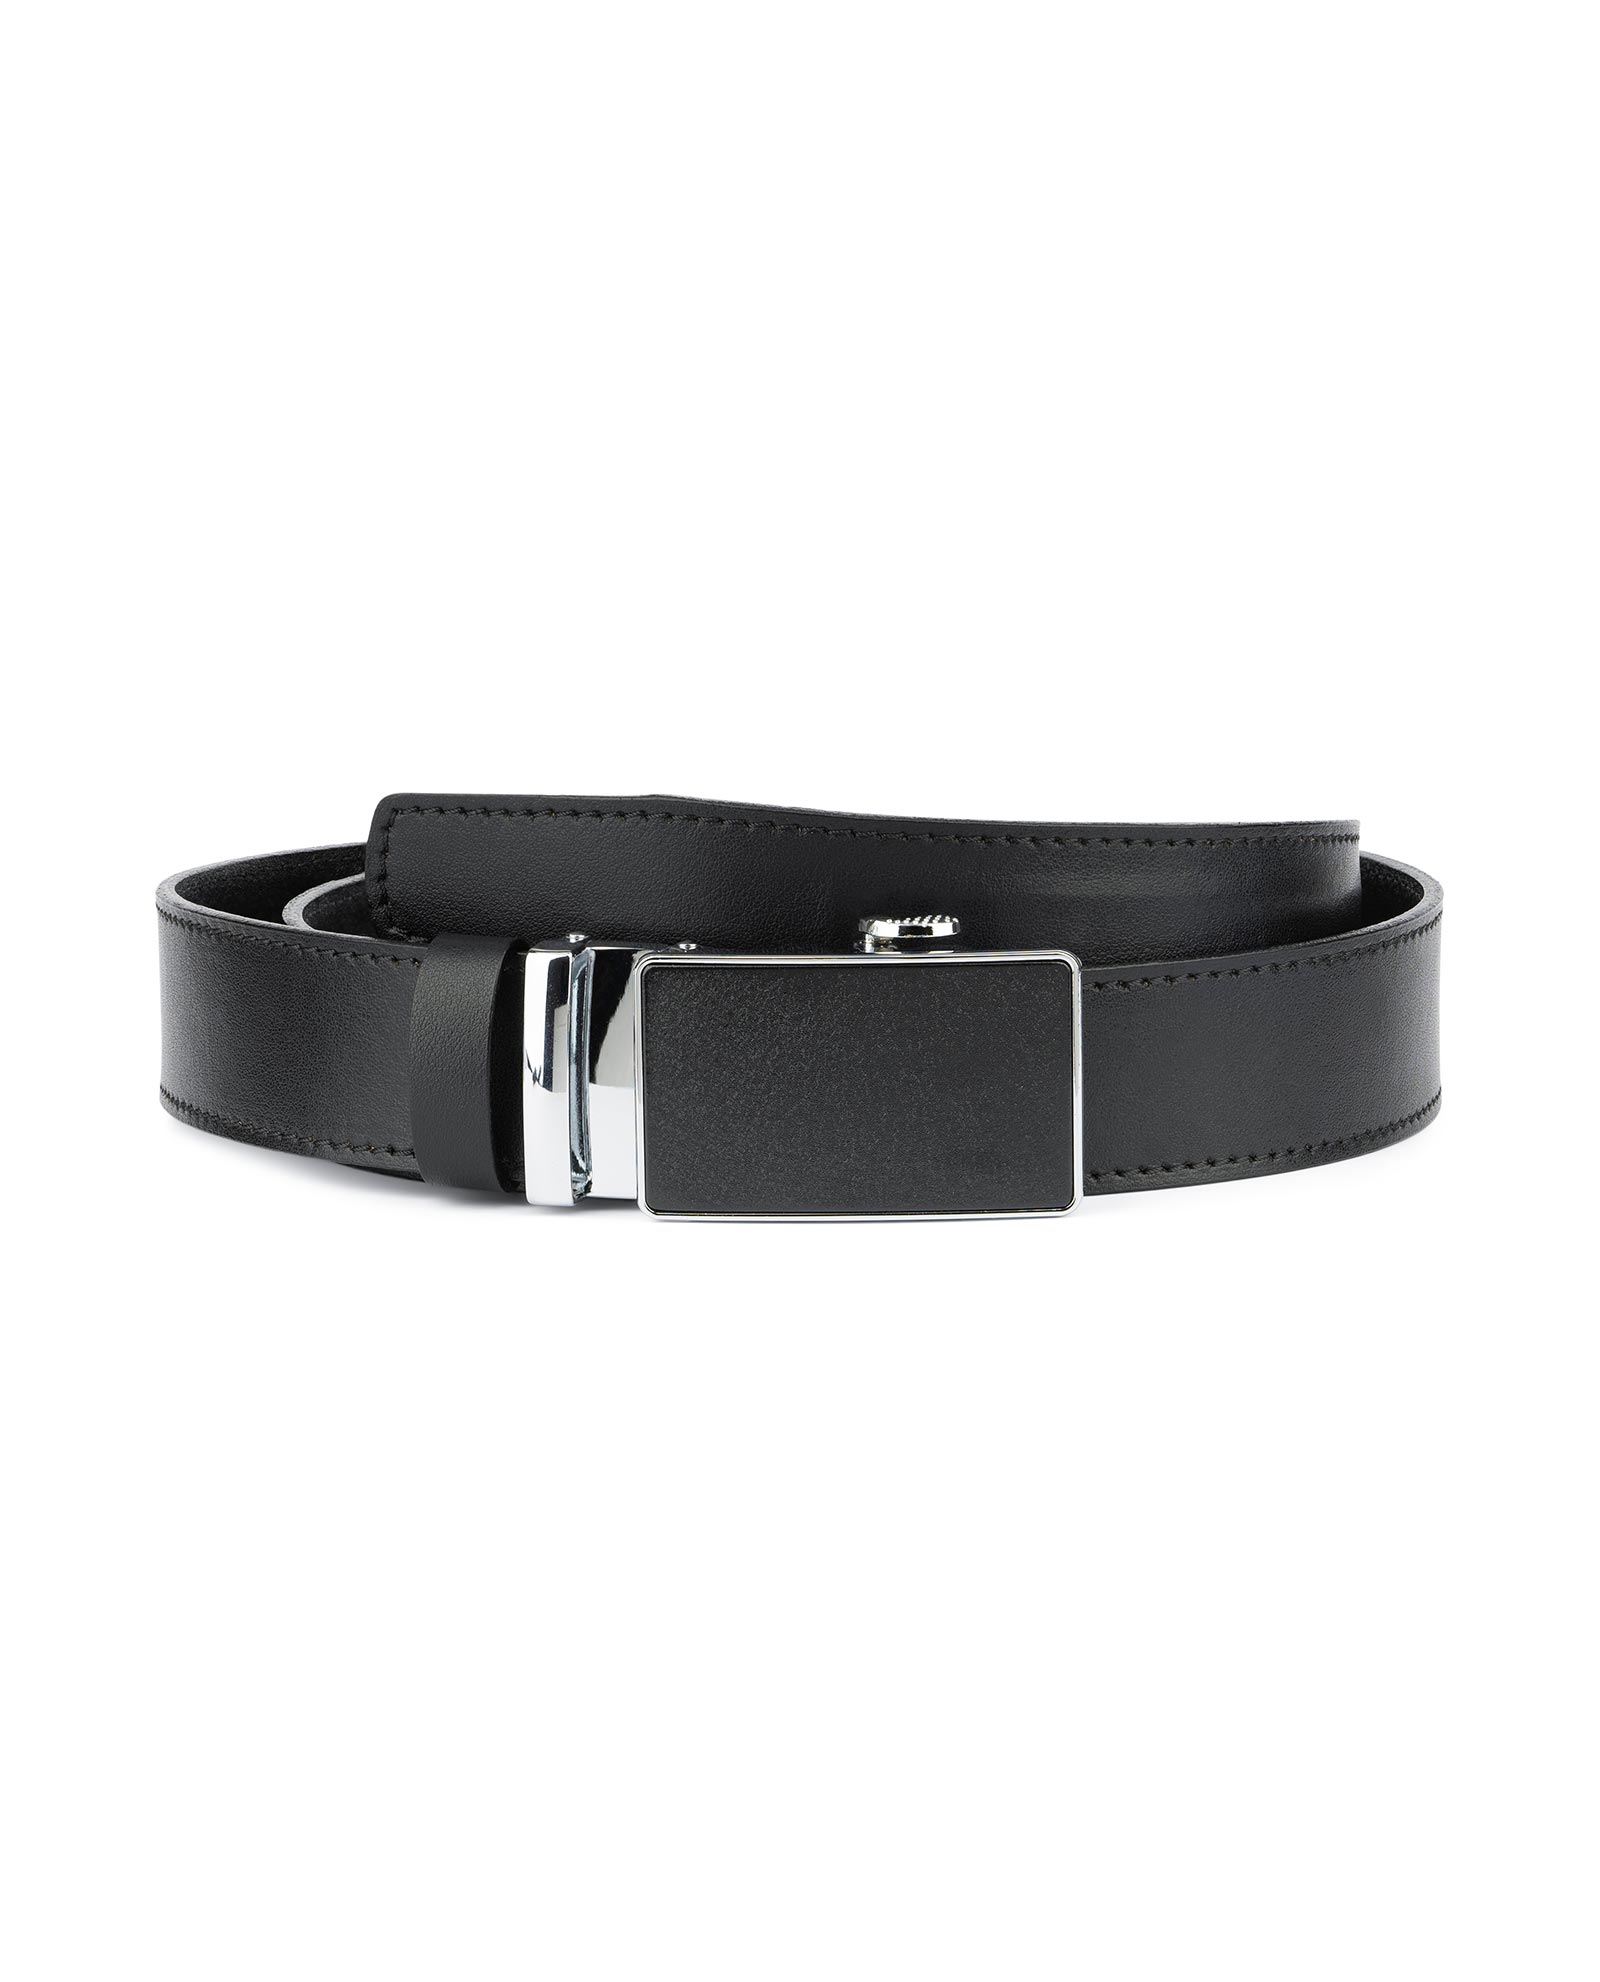 Buy Black Ratcheting Leather Belt for Men | LeatherBeltsOnline.com